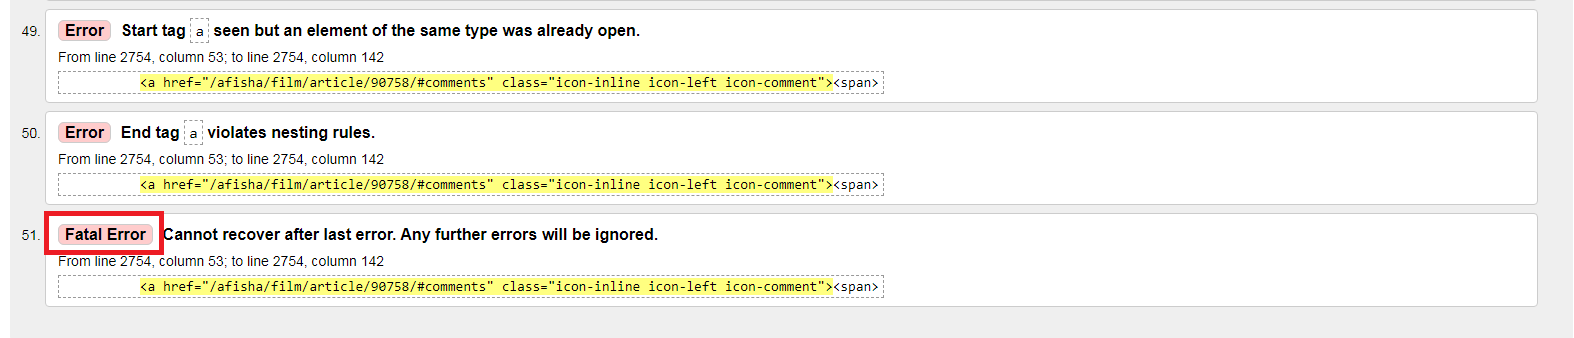 Поиск ошибок в коде сайта 